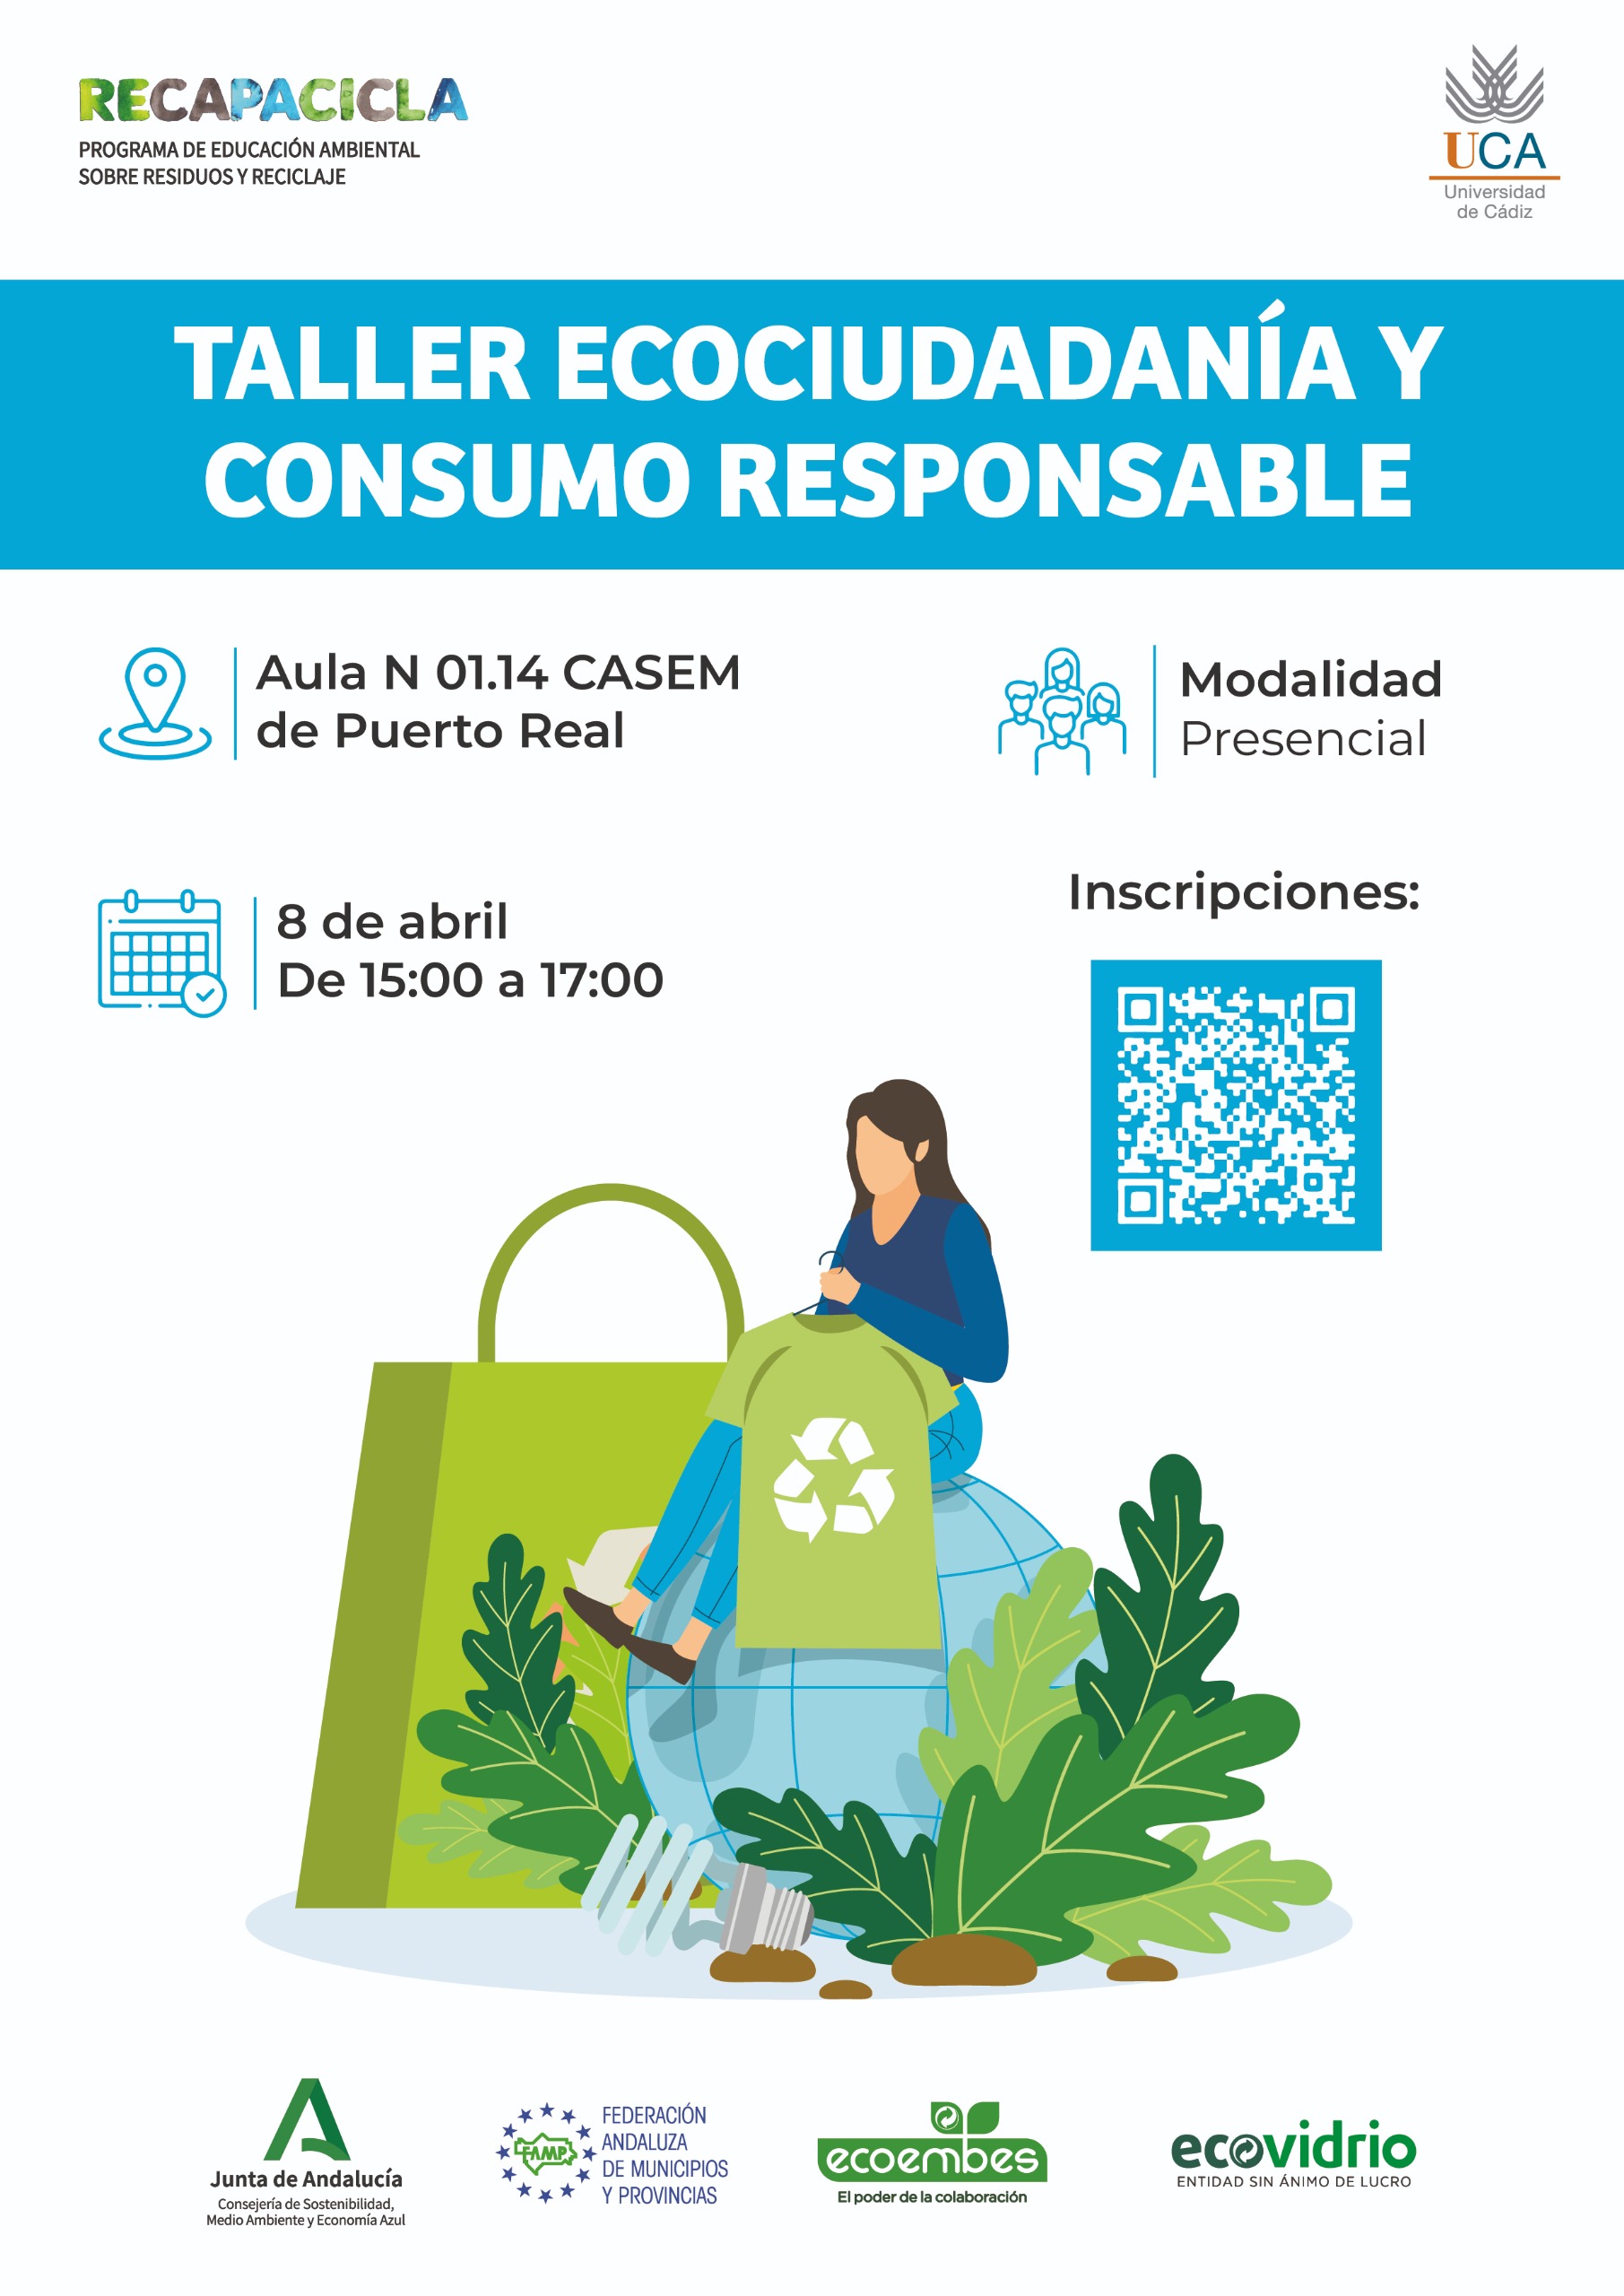 ¿Quieres participar en un Taller de Ecociudadania y Consumo Responsable?